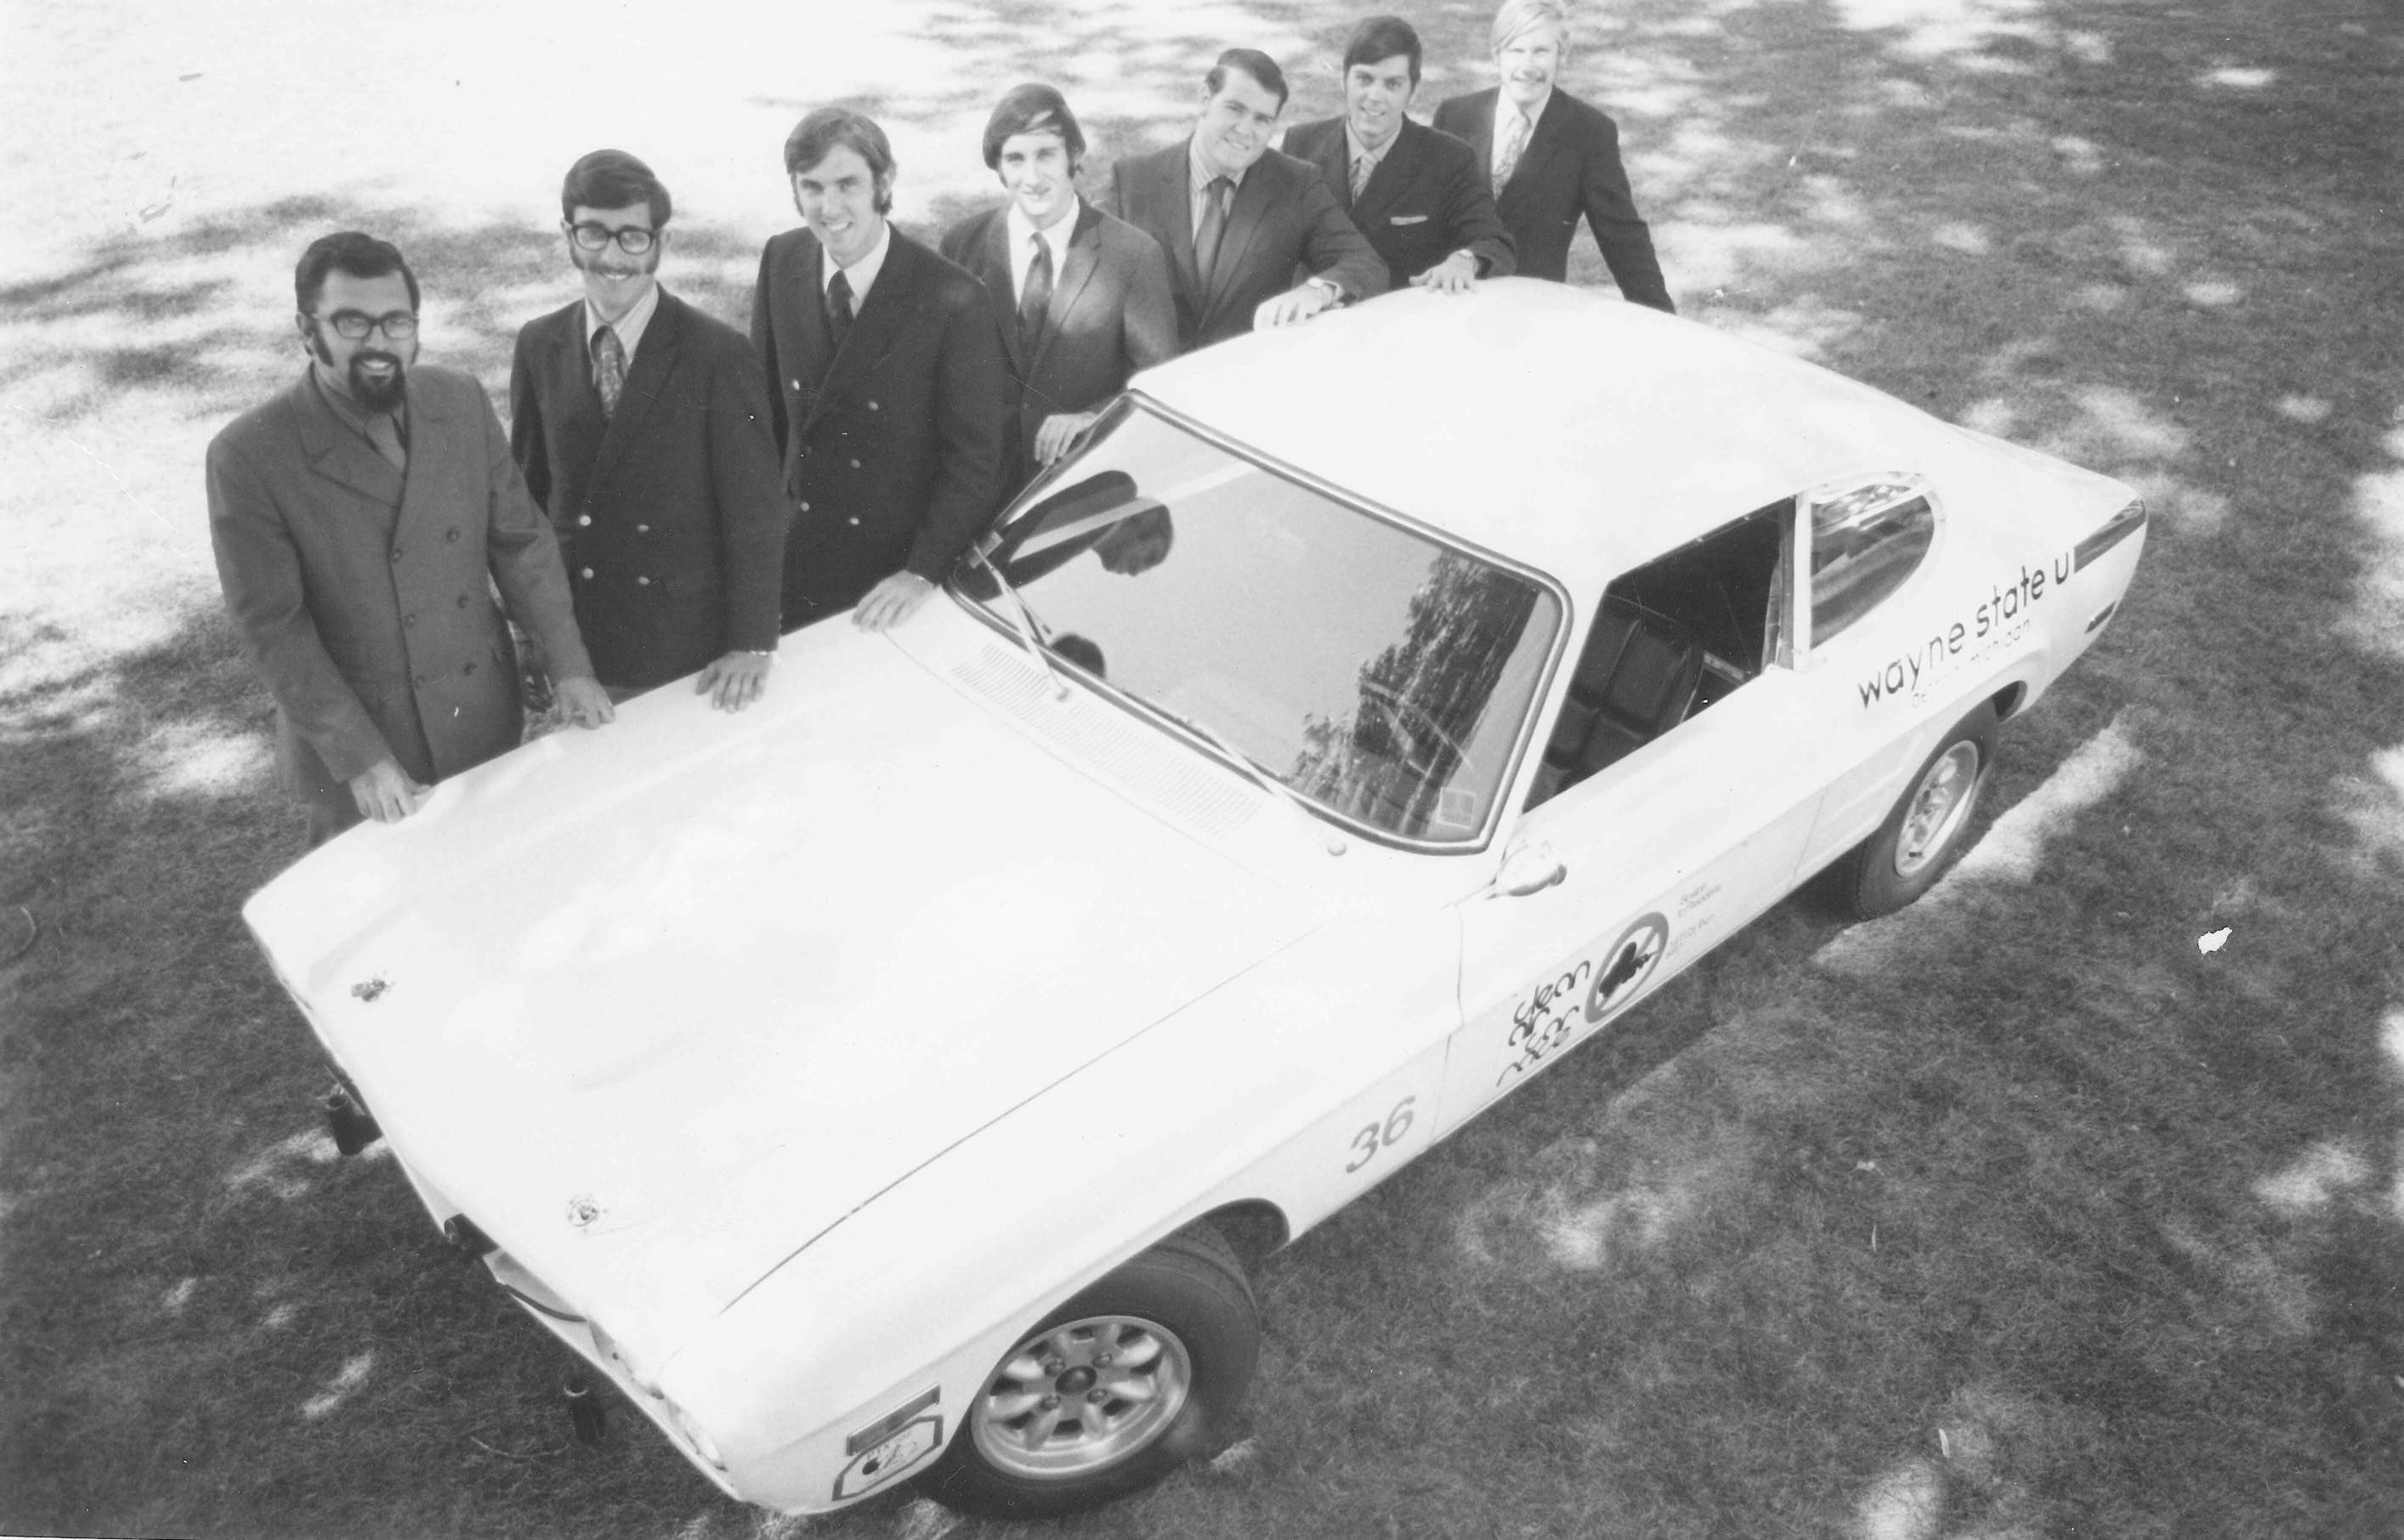 The 1970 Clean Air Race team